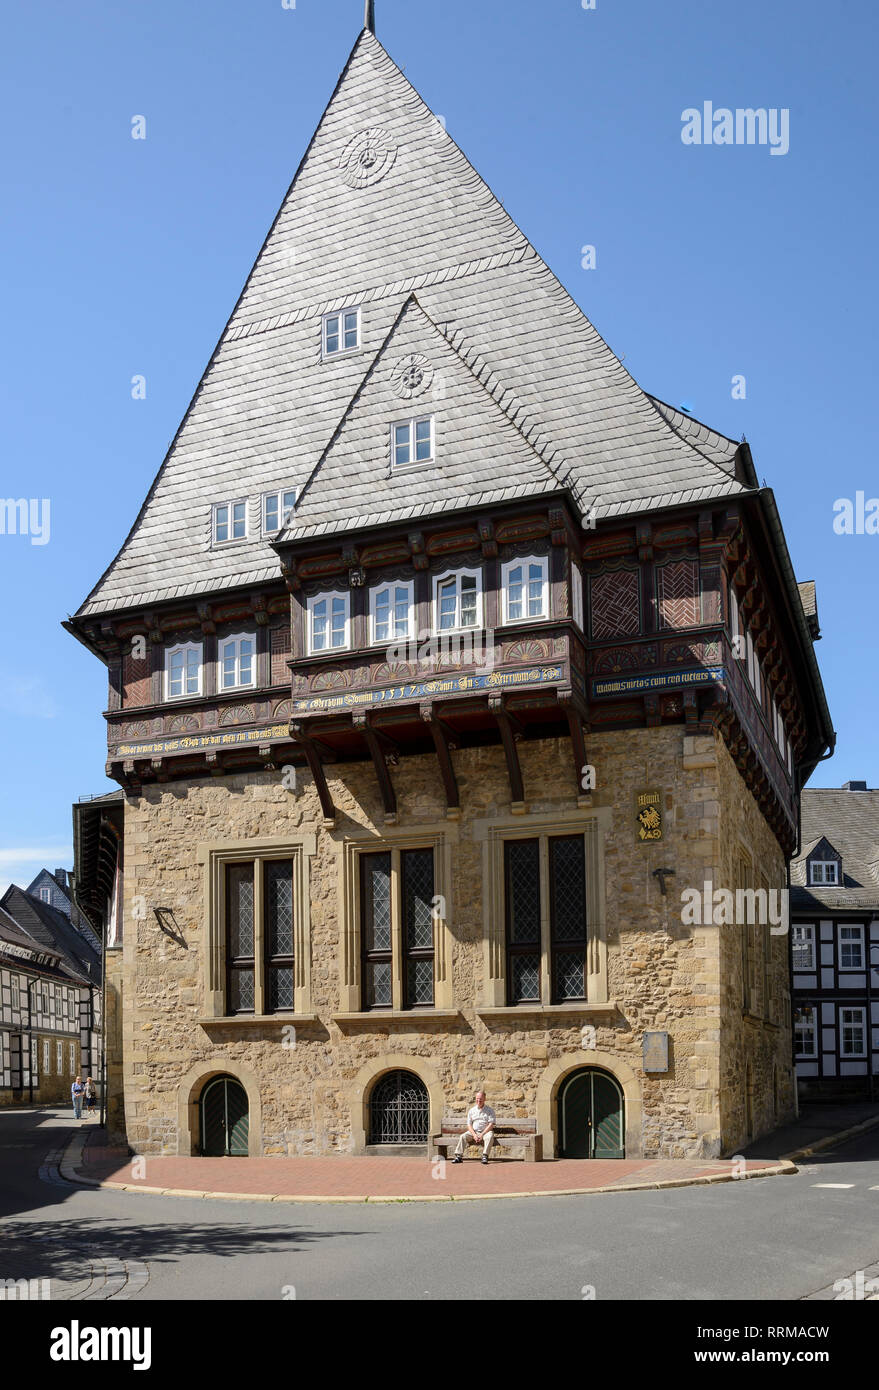 Bäckergildehaus, Goslar, Harz, Niedersachsen, Deutschland Stockfotografie -  Alamy